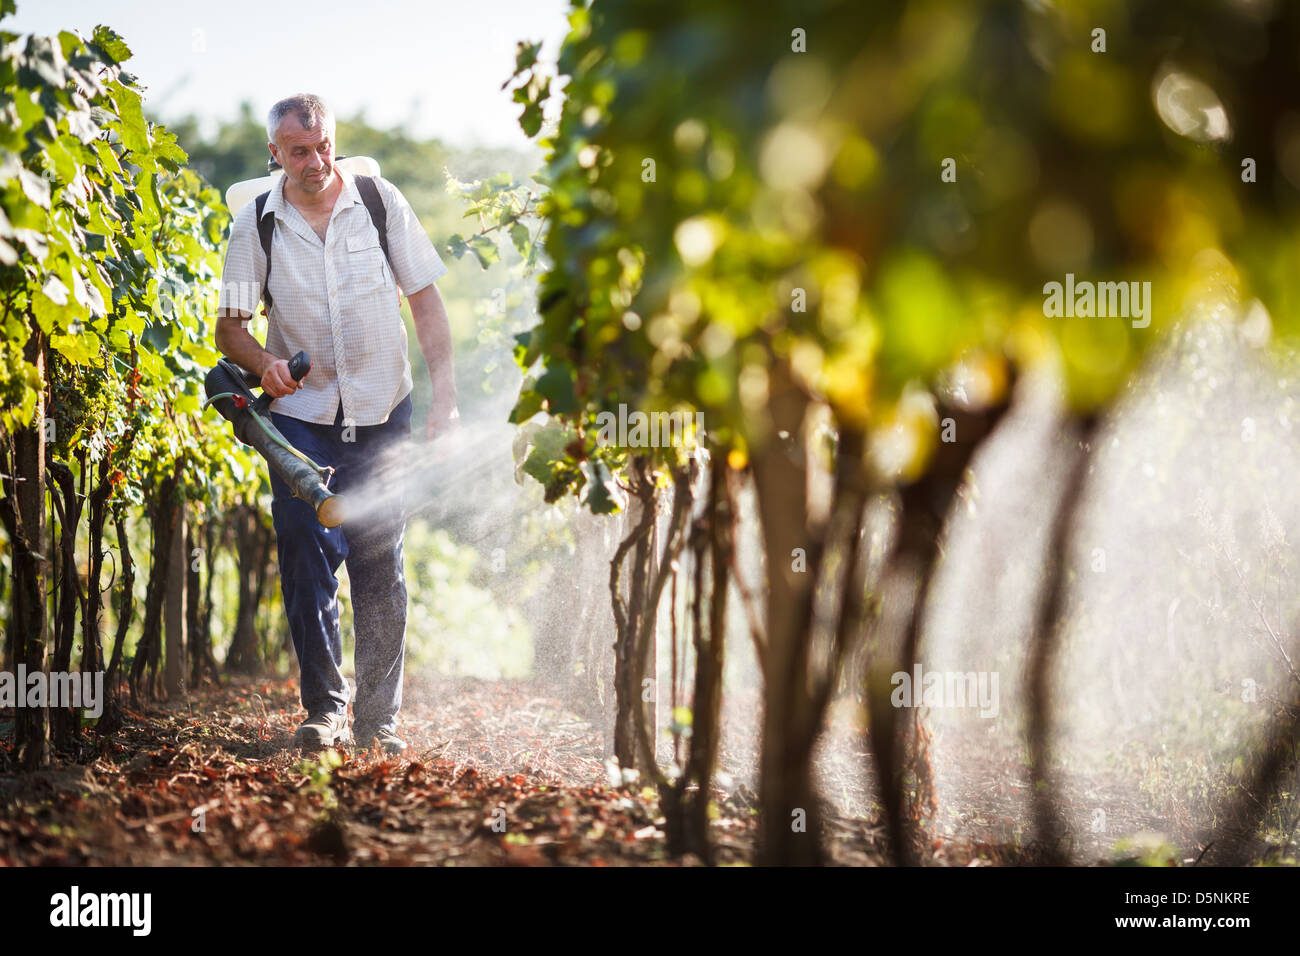 Vintner walking in his vineyard spraying chemicals on his vines Stock Photo